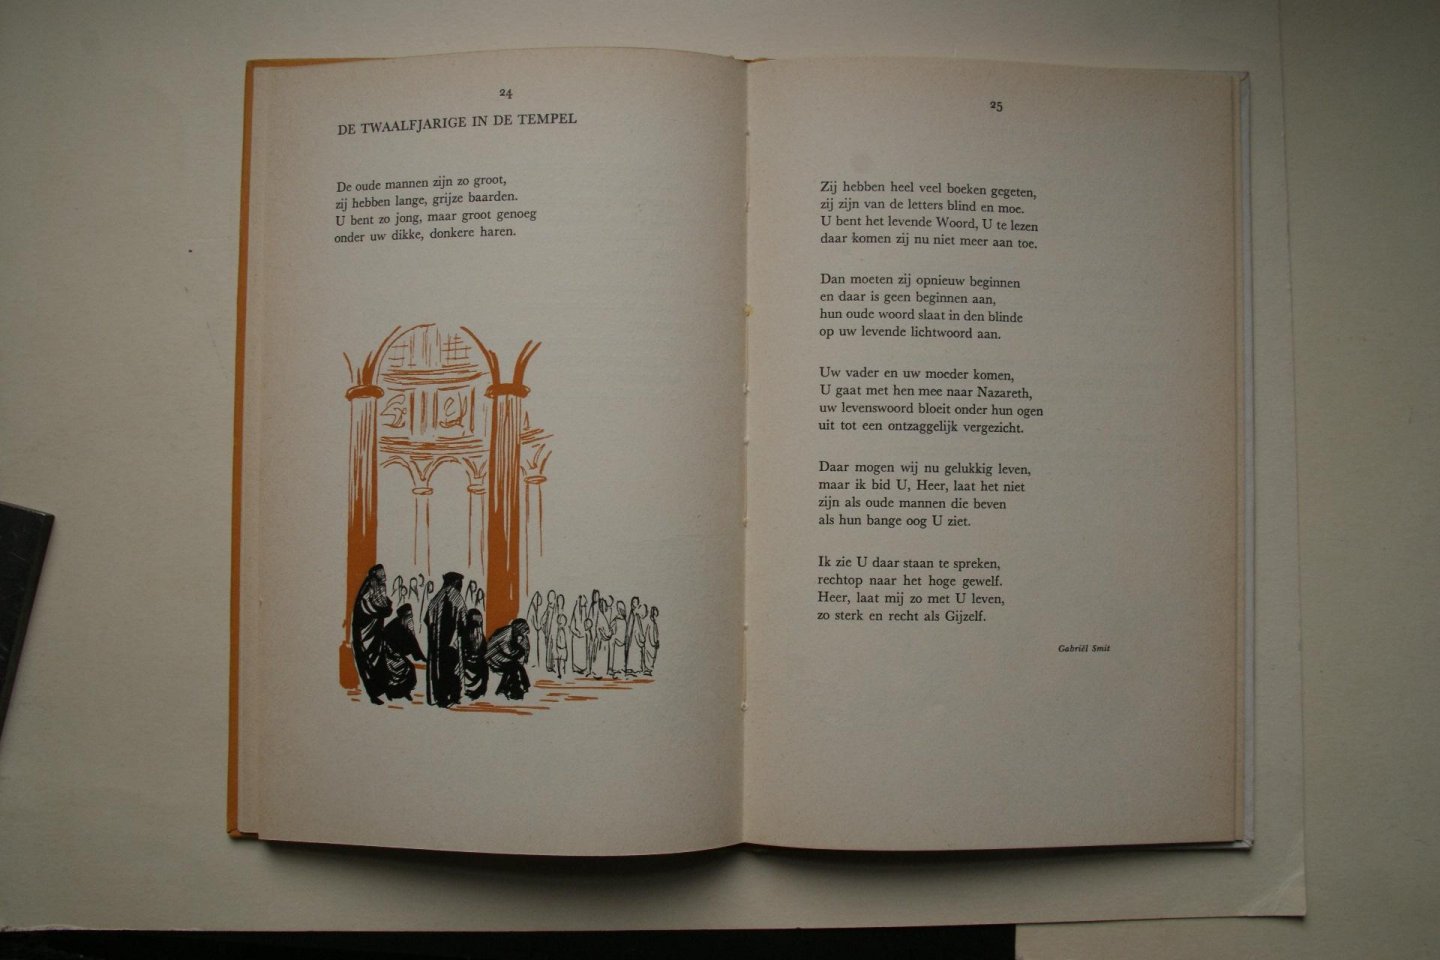 Graft, Guillaume van der - bloemlezing religieuze gedichten De Twaalfjarige In de Tempel